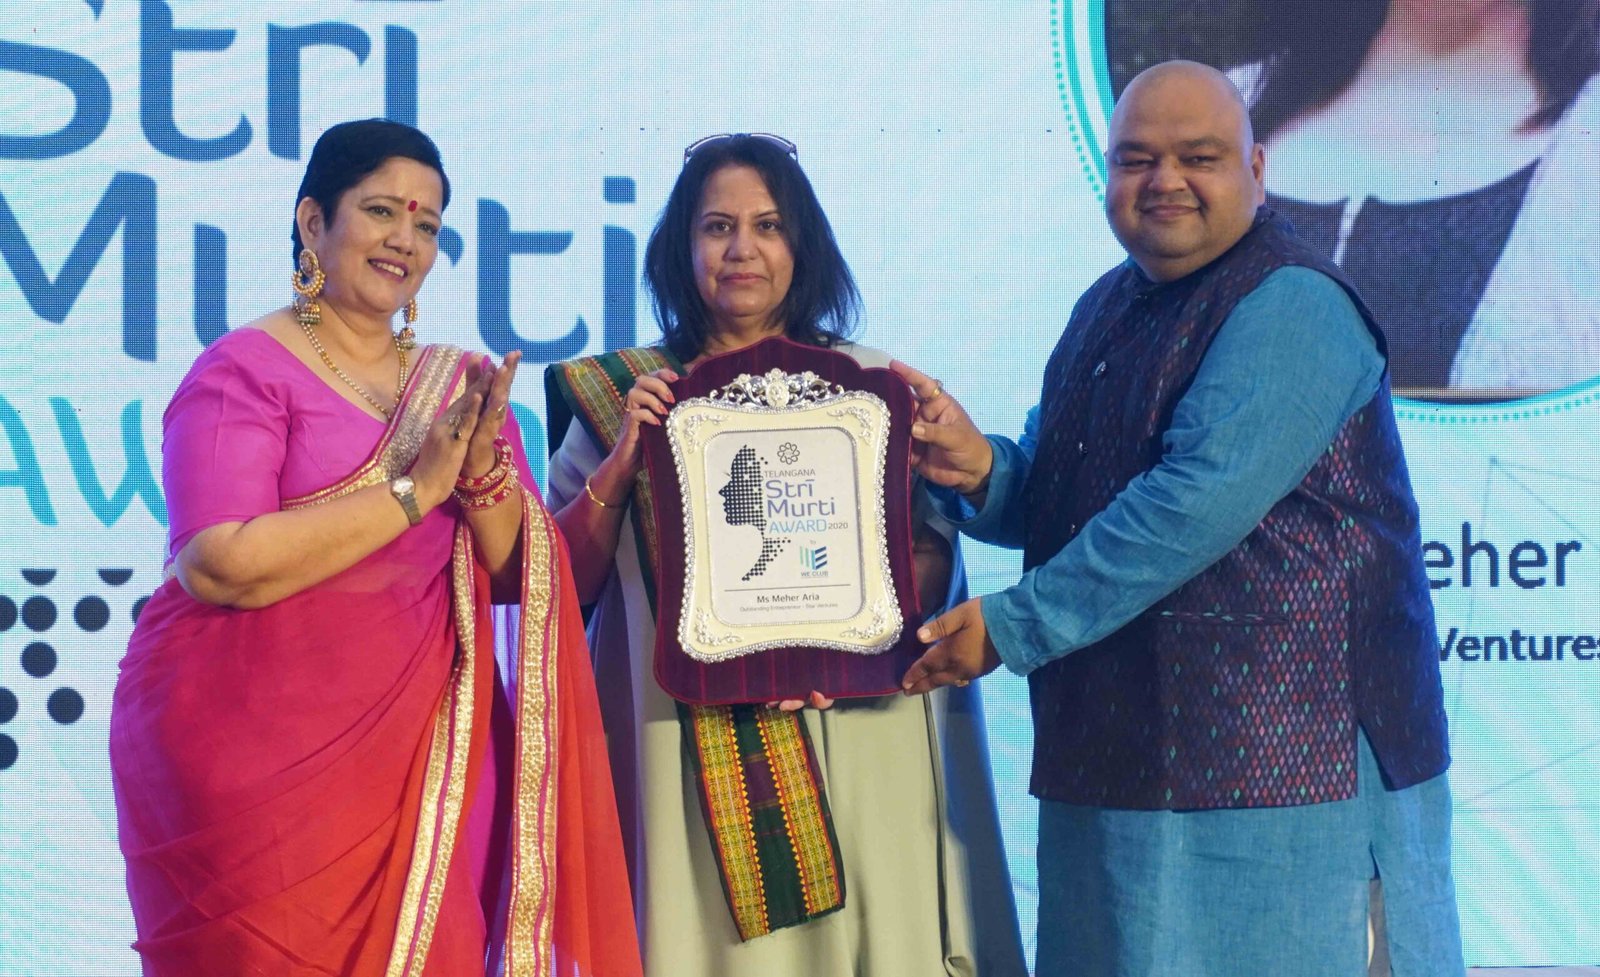 Ms. Rakhi Kankaria, Chairman, TCEI_ Neeraj Thakur, General Secretary, TCIE seen presenting Award to Meher Aria, founder, Star Ventures at TCEI Stri Shakthi Awards 2020